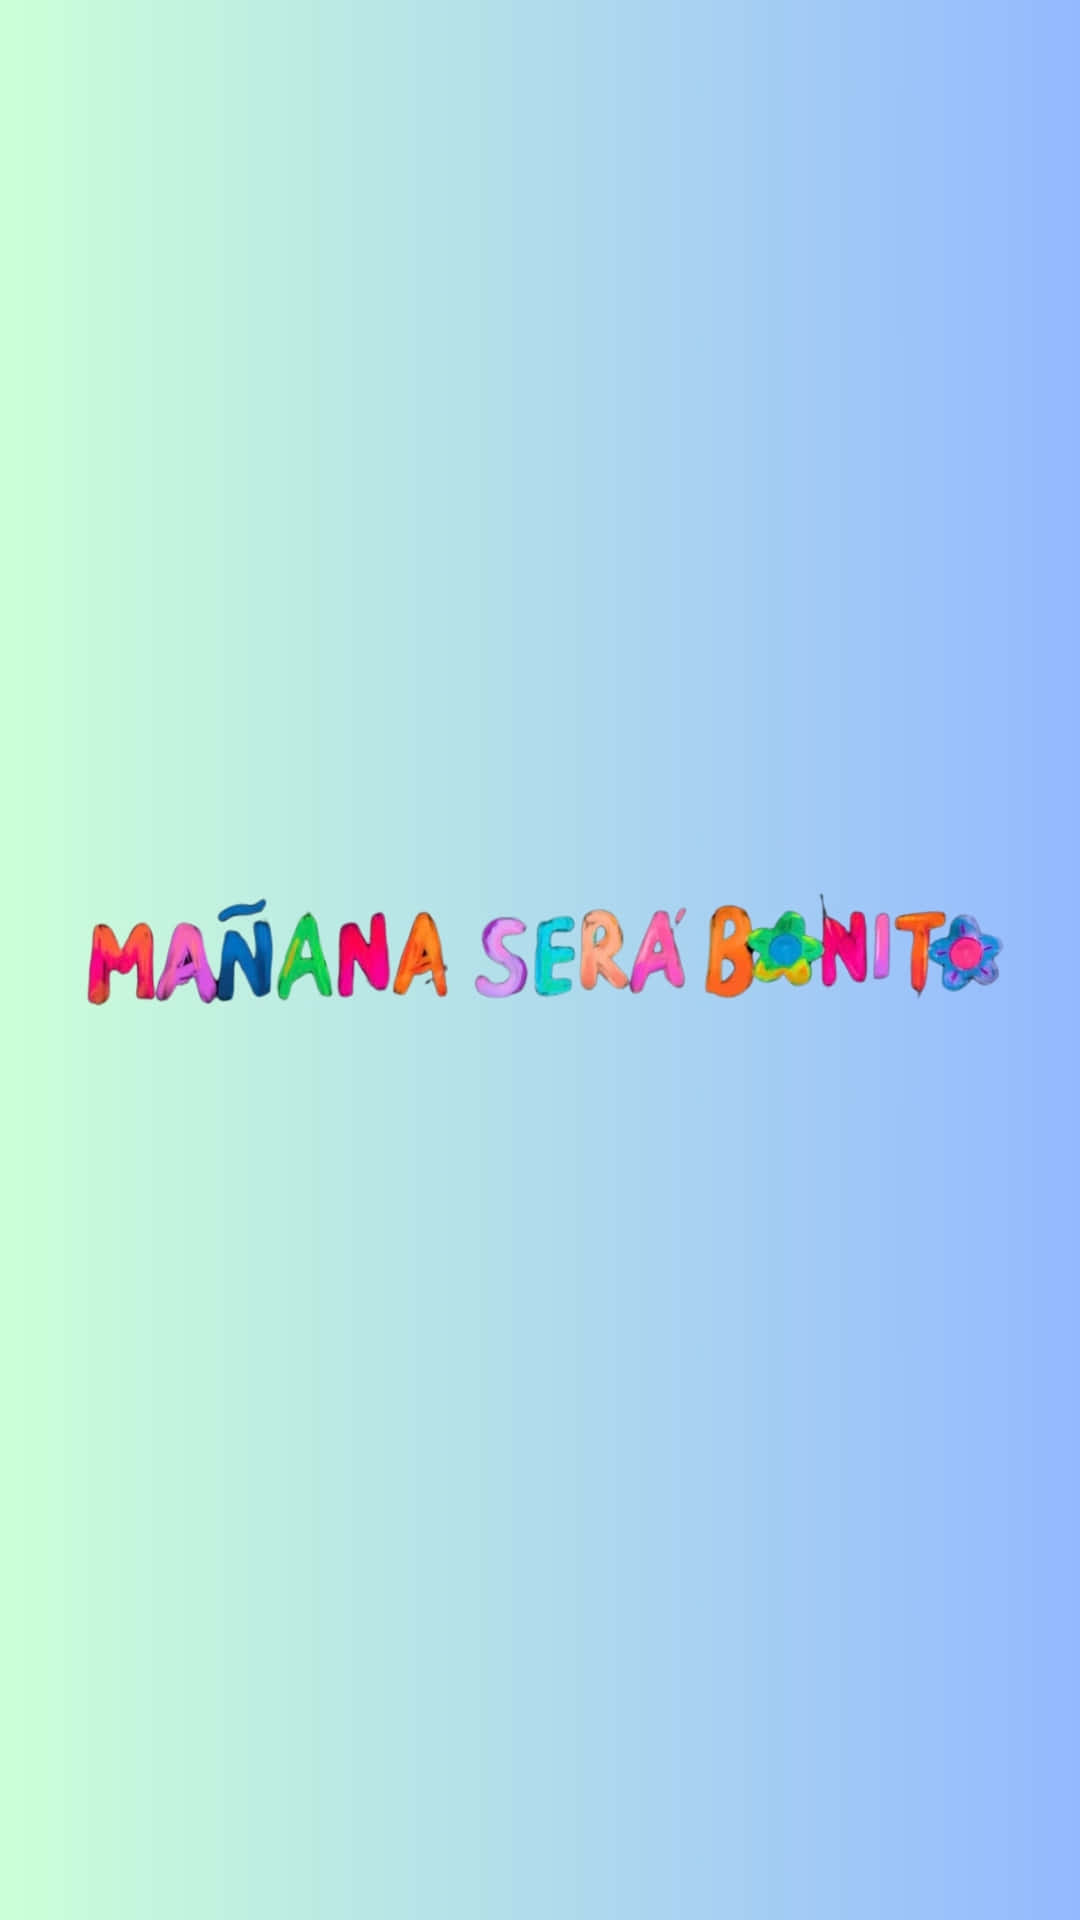 Manana Sera Bonito Colorful Text Wallpaper